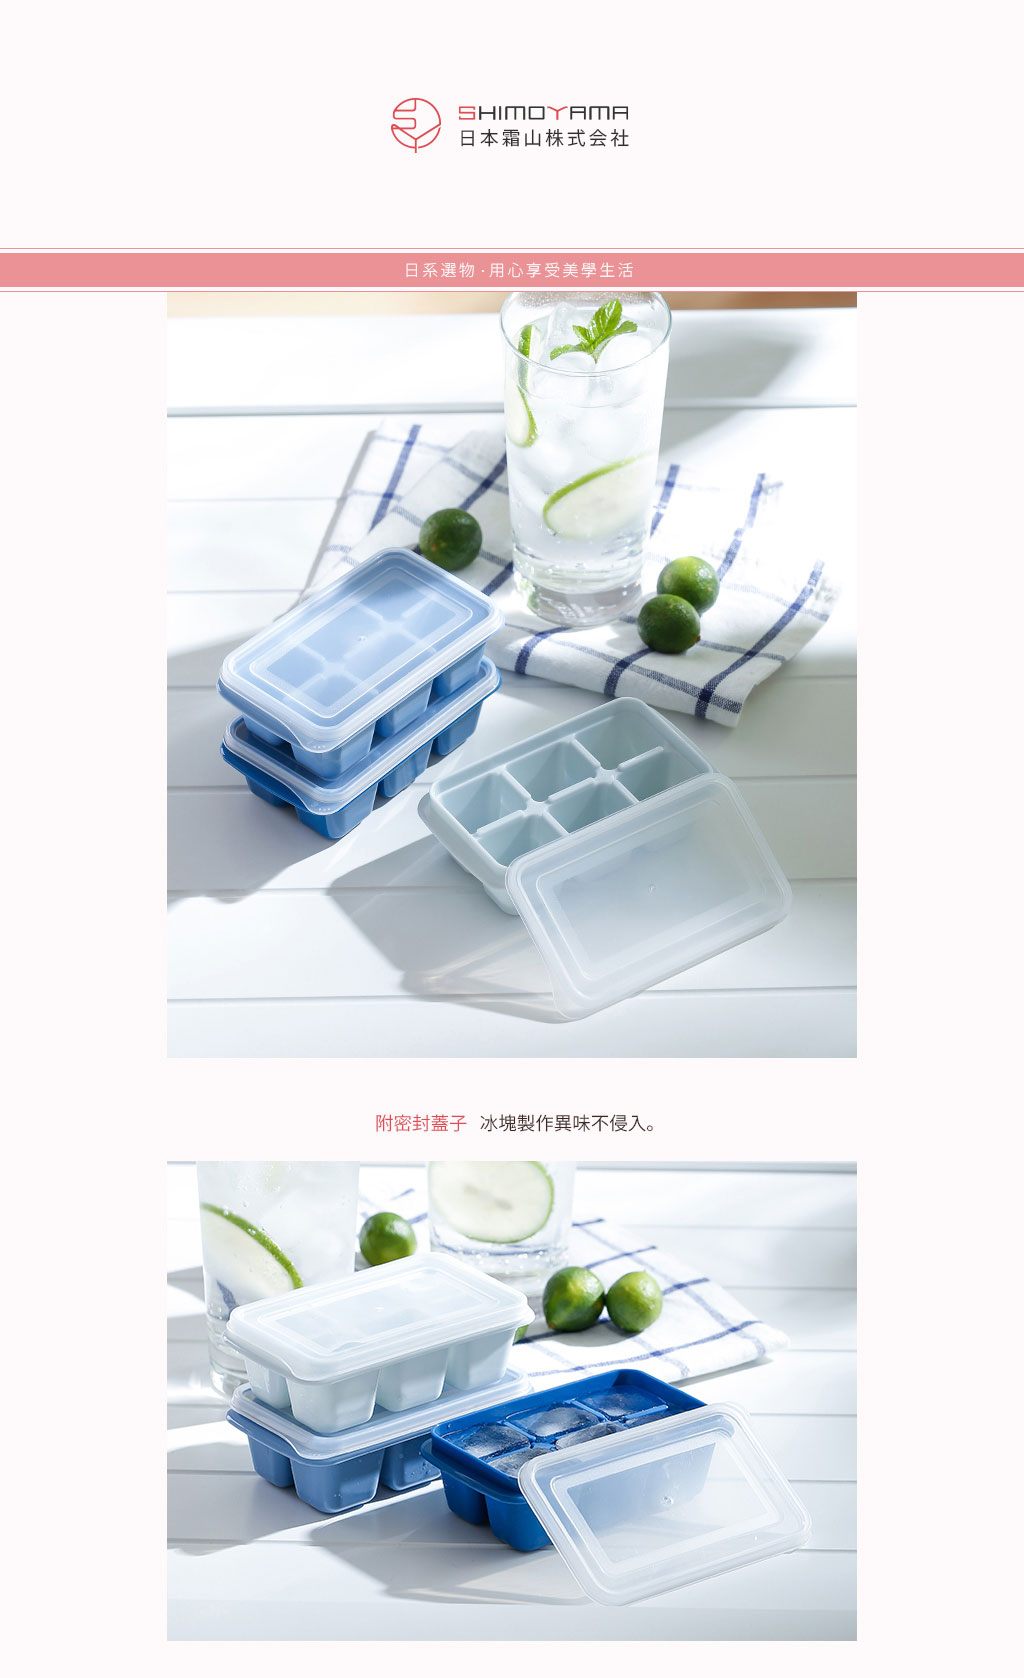 日本霜山 防異味密封式6格製冰盒附蓋 (莫蘭迪藍3色) 9入